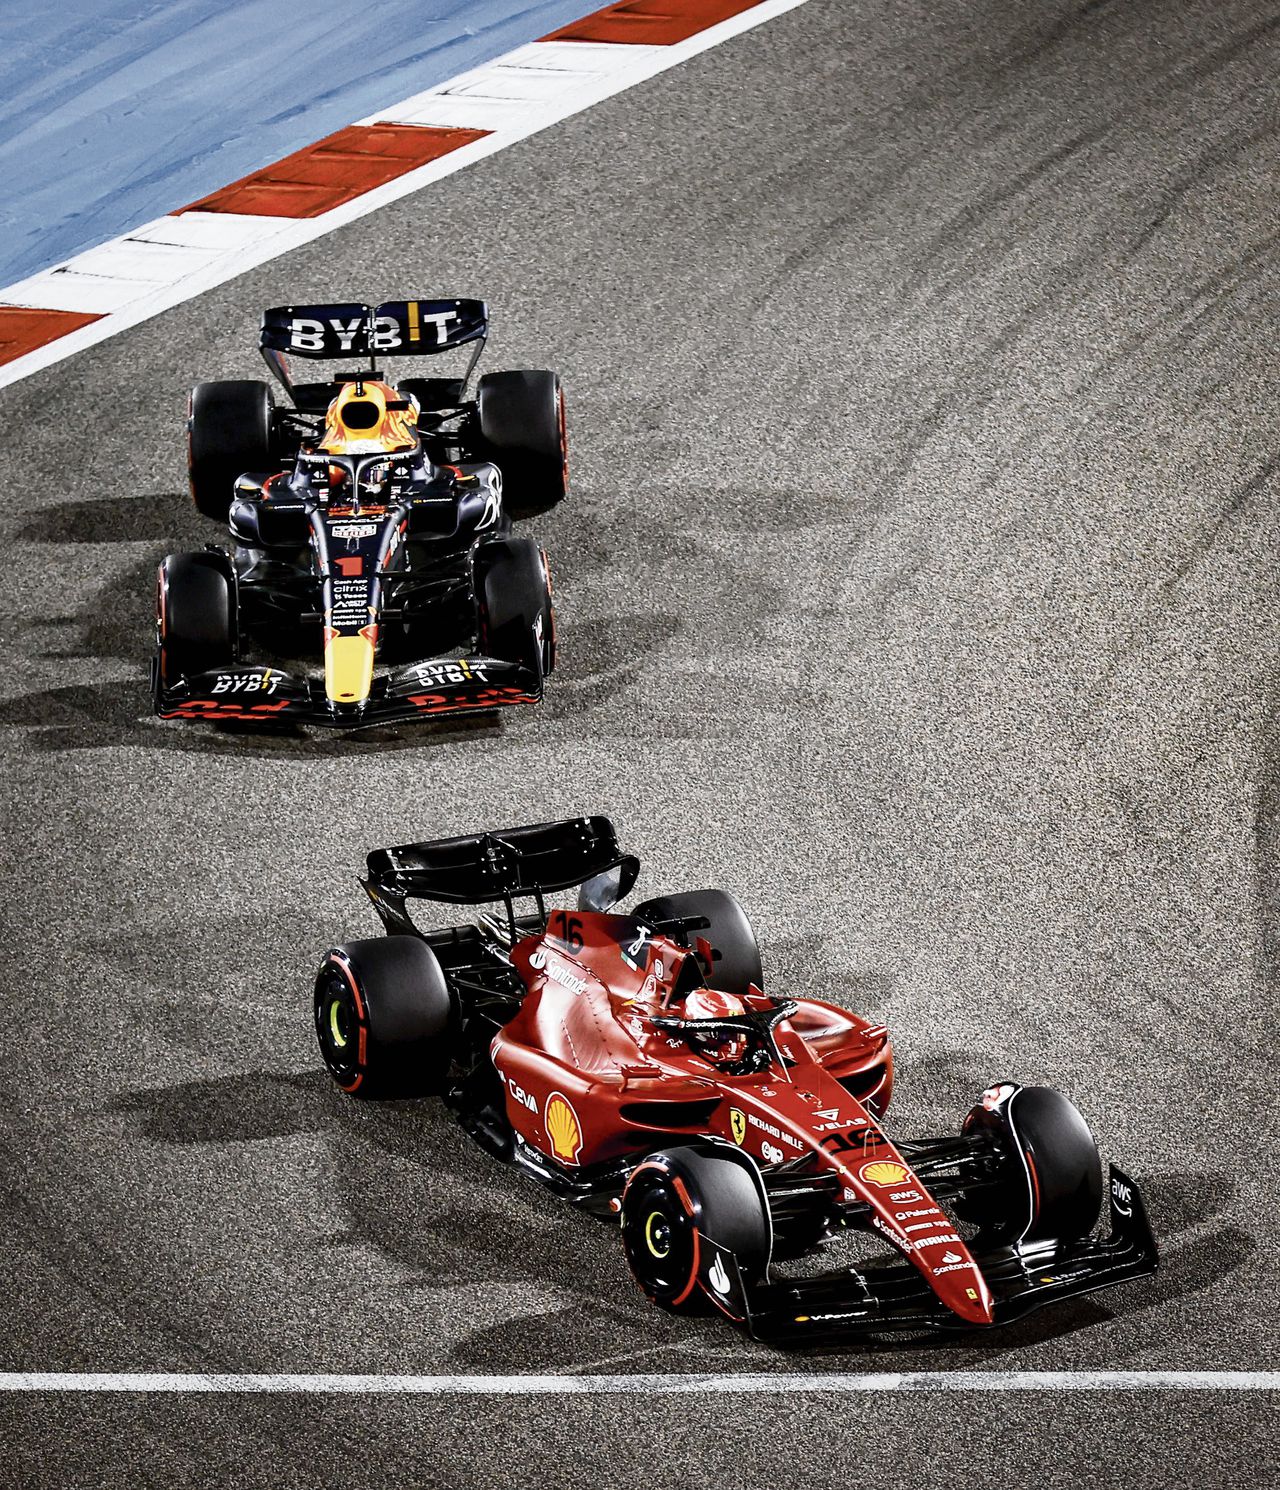 Dubbelslag Ferrari bij Grote Prijs van Bahrein, Verstappen valt uit 